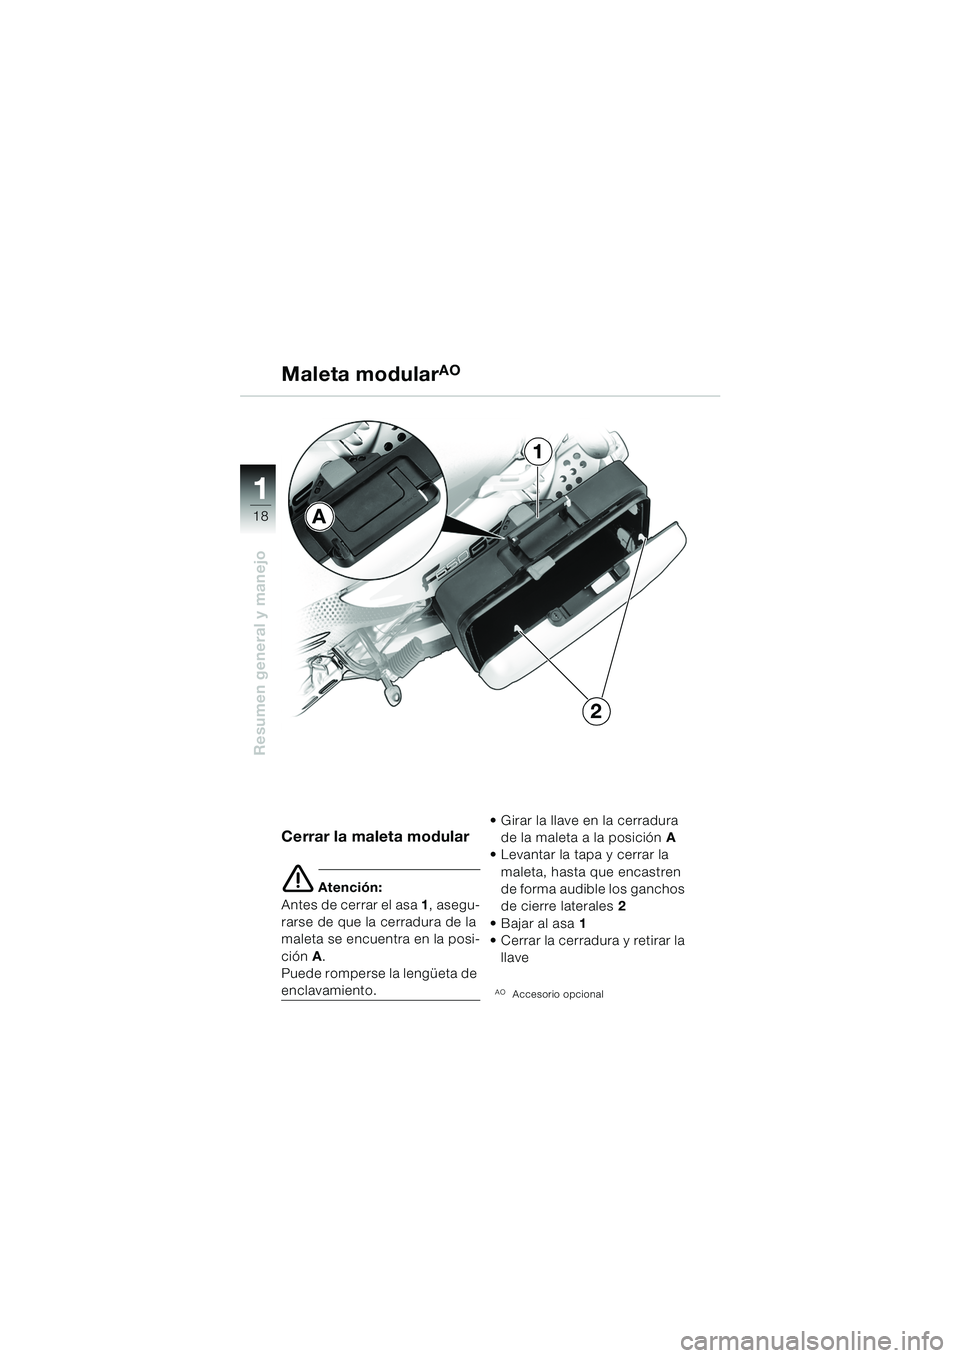 BMW MOTORRAD F 650 GS DAKAR 2003  Manual de instrucciones (in Spanish) 11
18
Resumen general y manejo
Maleta modularAO
Cerrar la maleta modular
e Atención:
Antes de cerrar el asa  1, asegu-
rarse de que la cerradura de la 
maleta se encuentra en la posi-
ción  A.
Puede